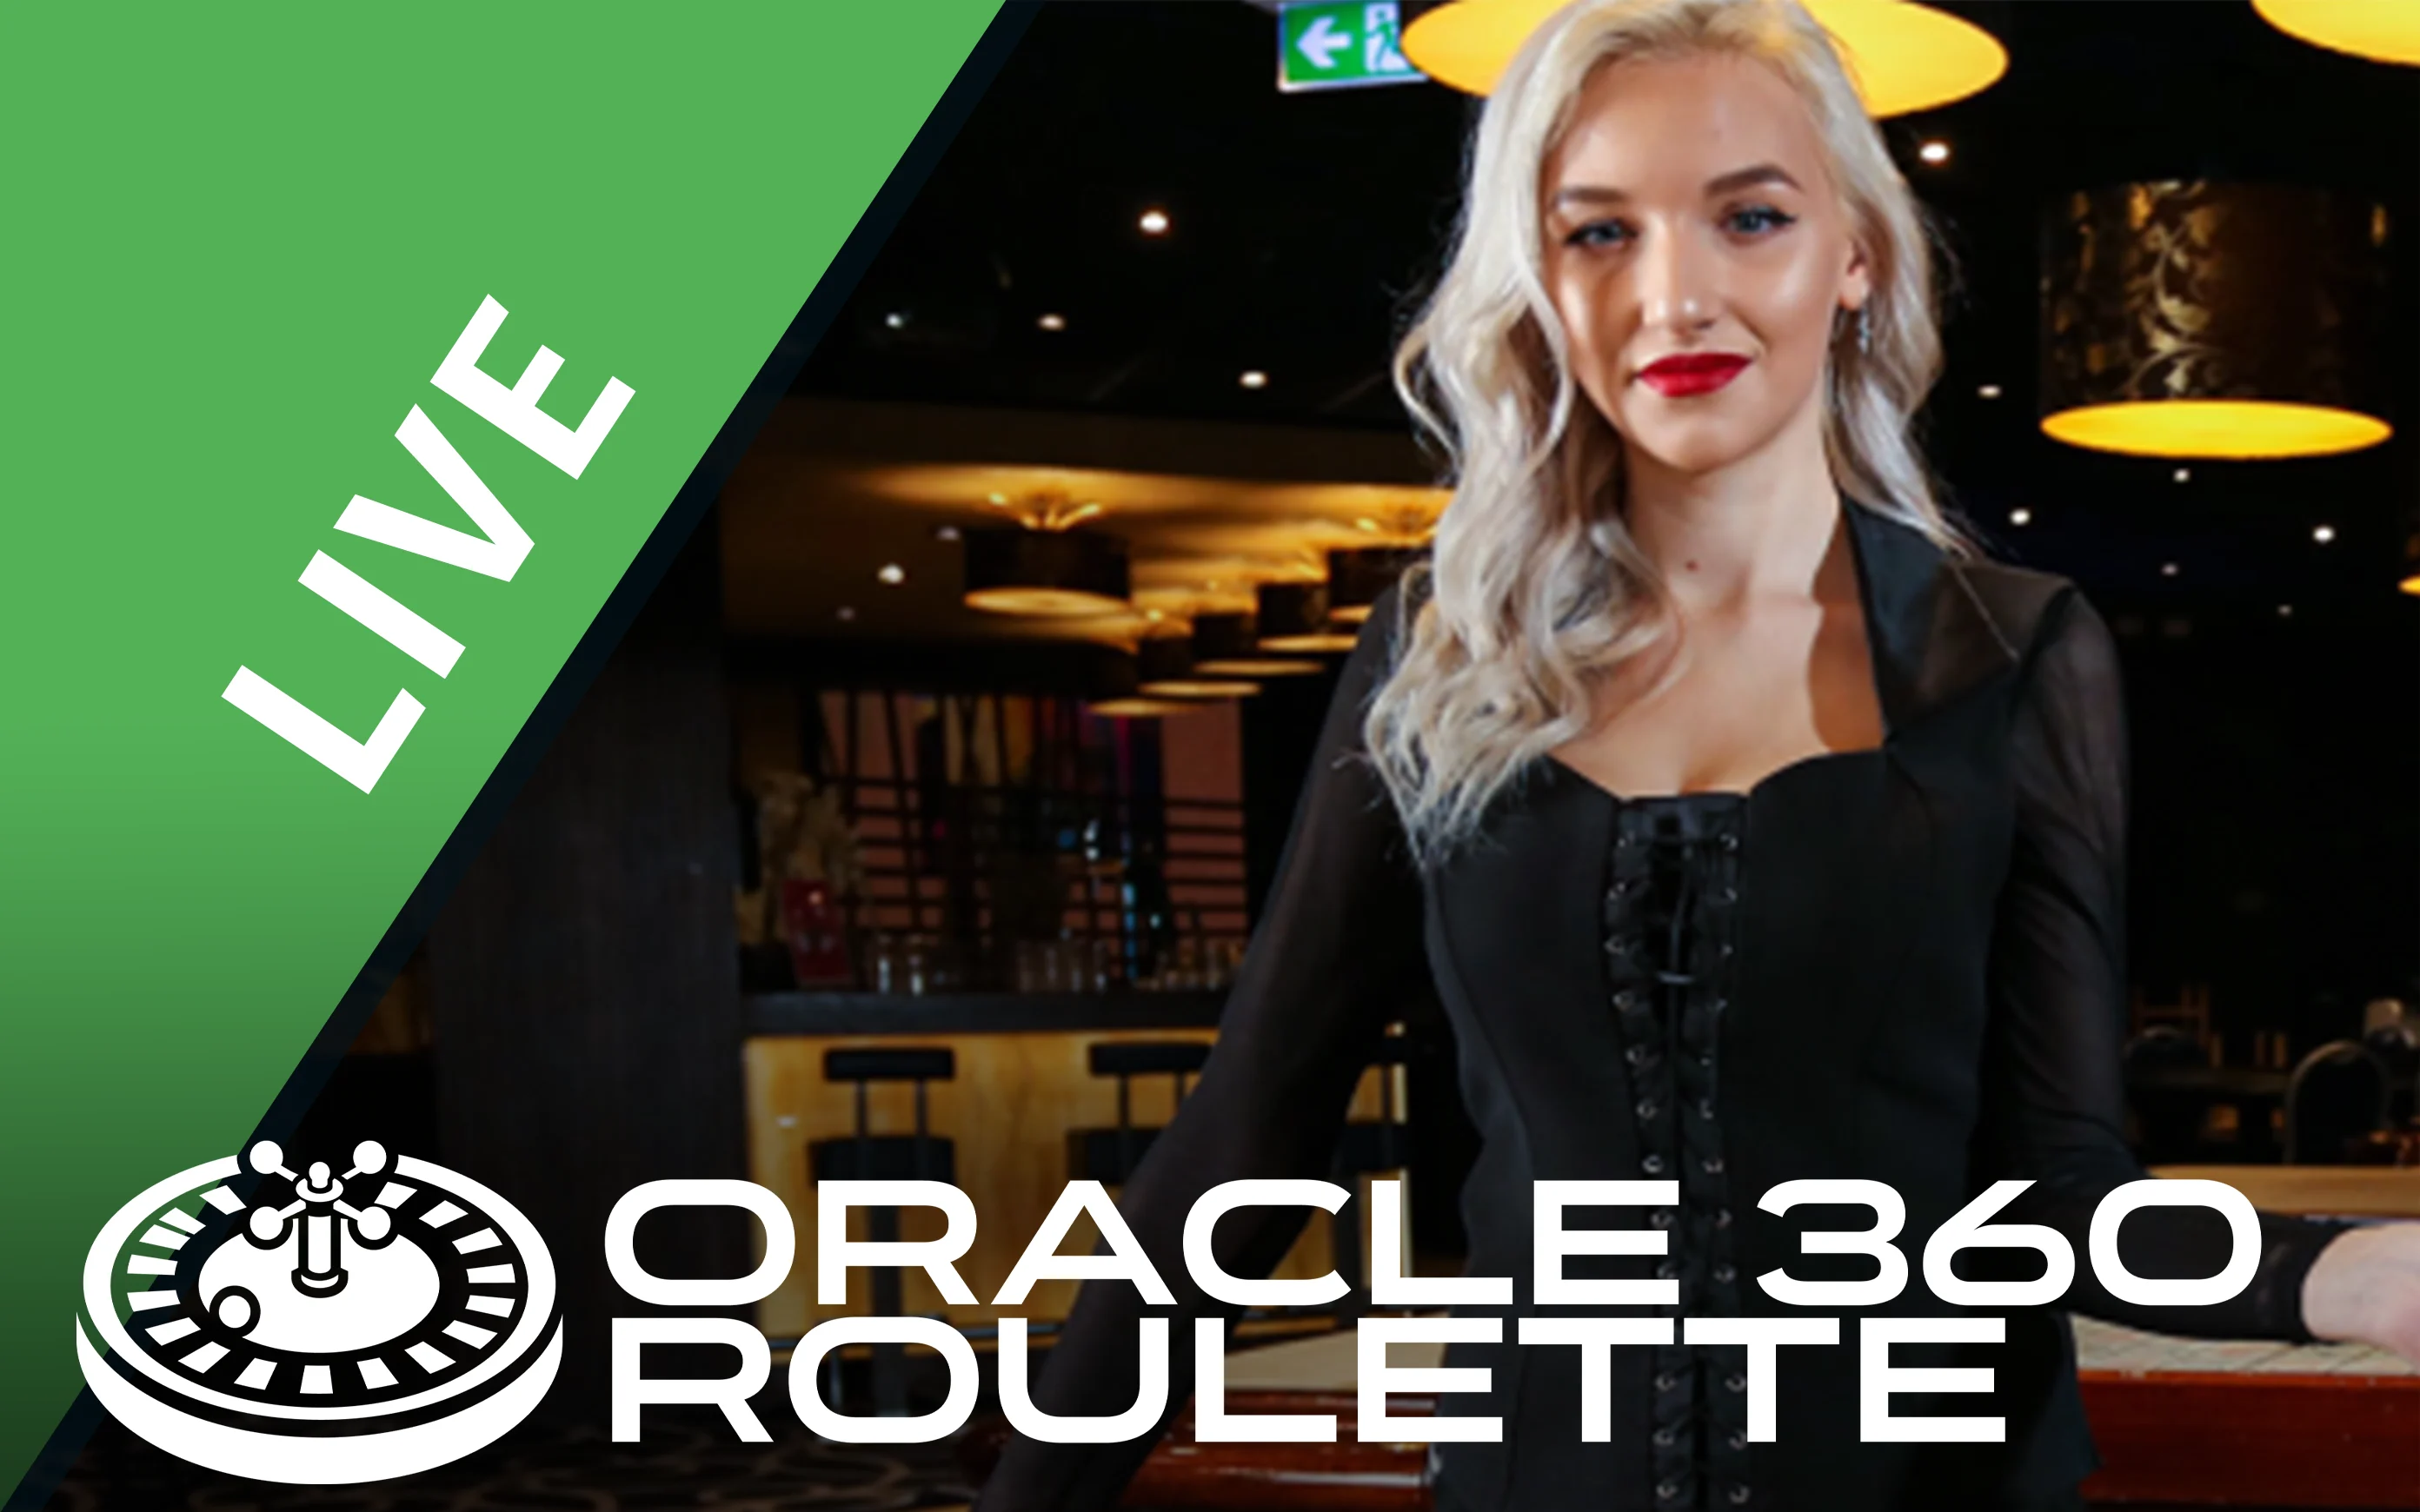 เล่น Oracle 360 Roulette บนคาสิโนออนไลน์ Starcasino.be